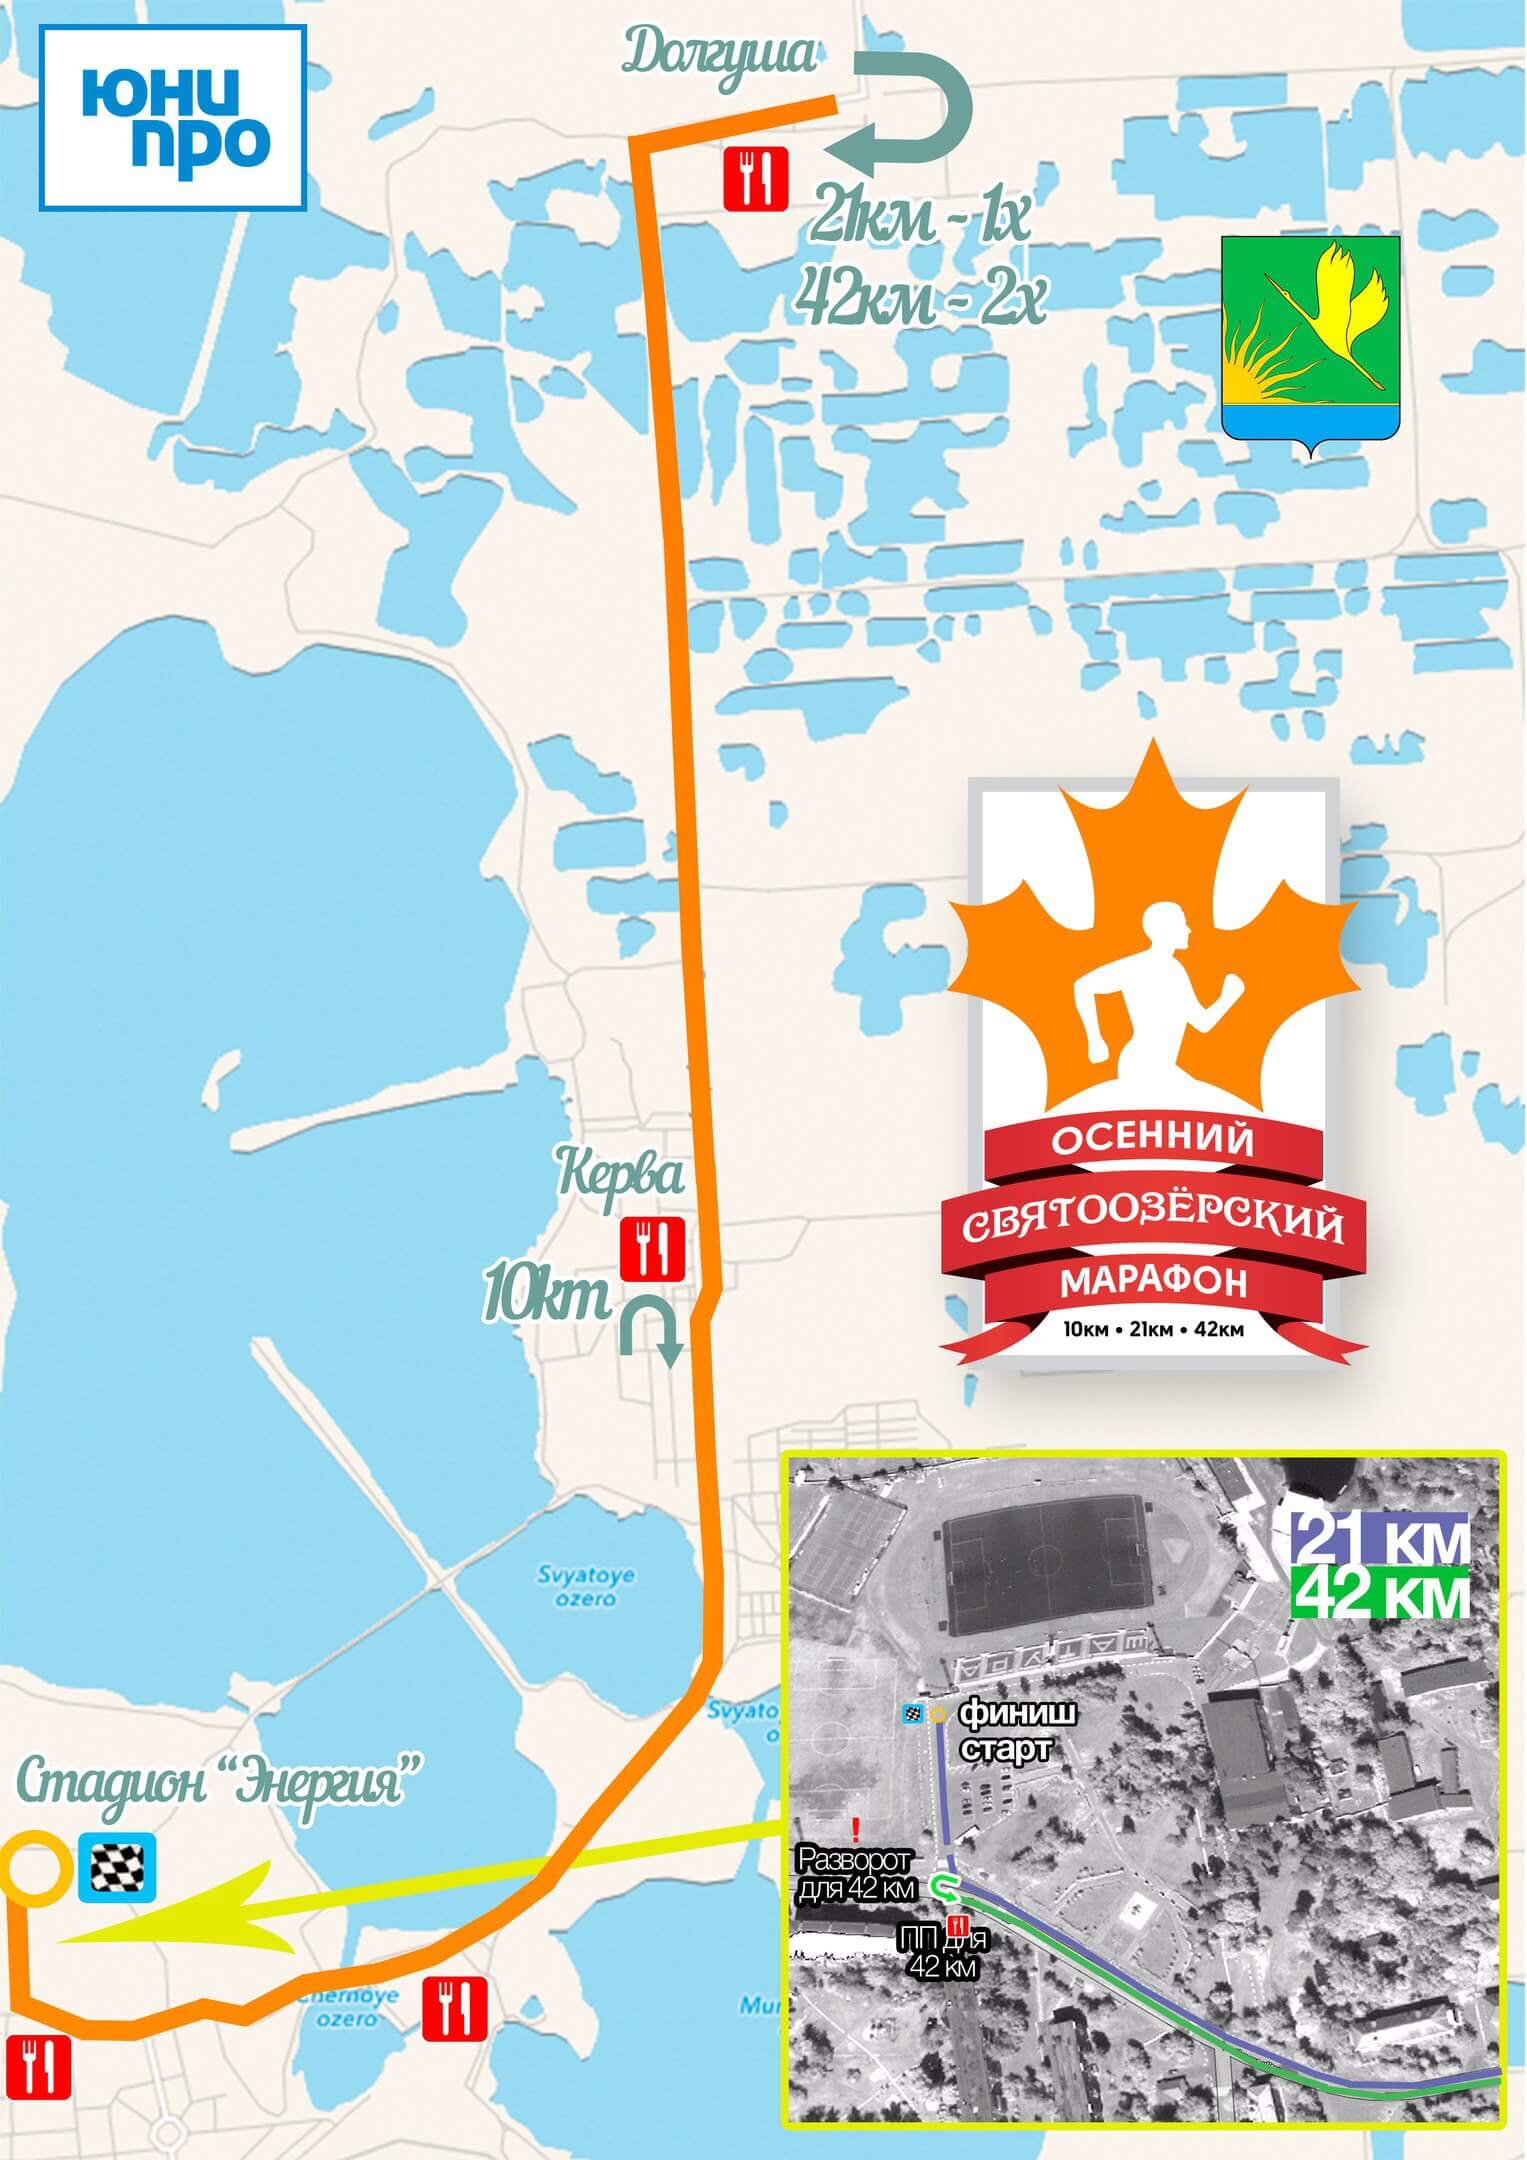 Карта Осеннего Святоозёрского марафона 2016